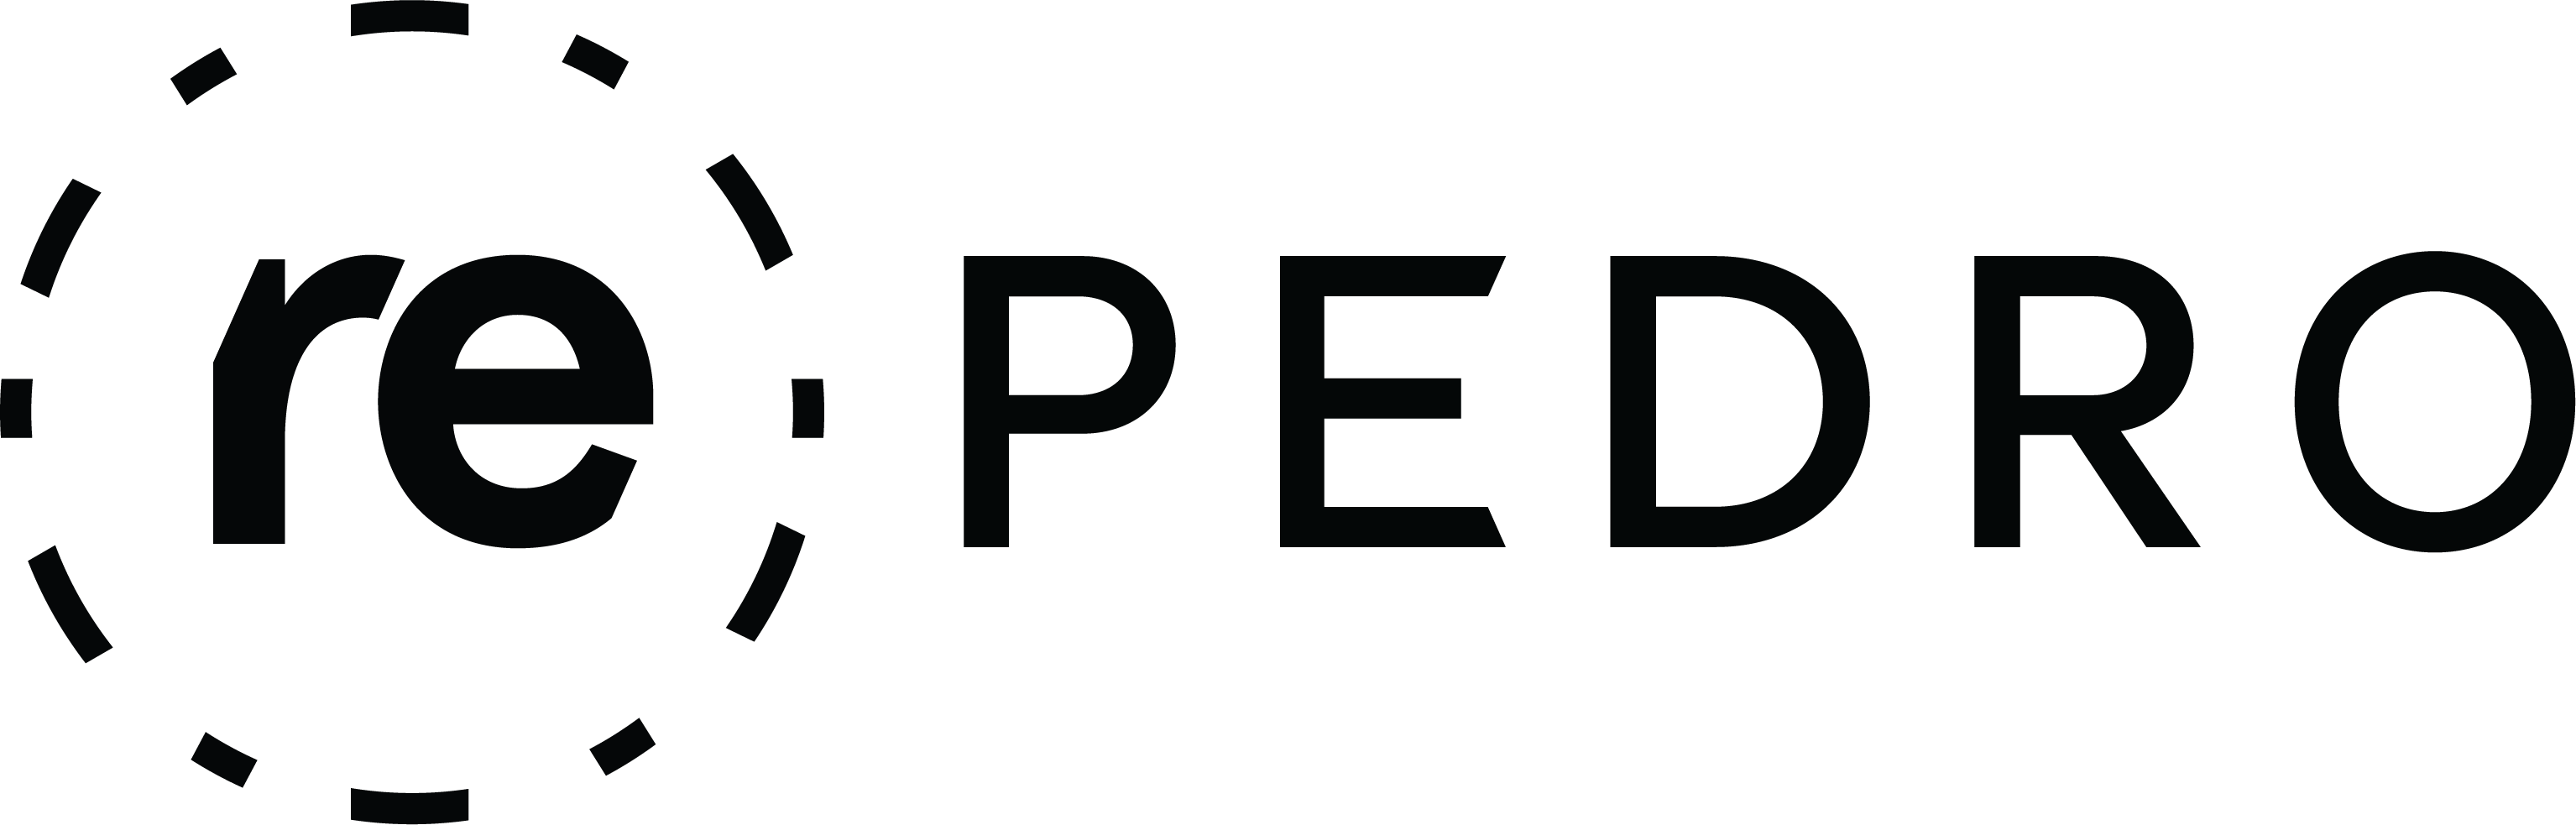 repedro-logo.jpg